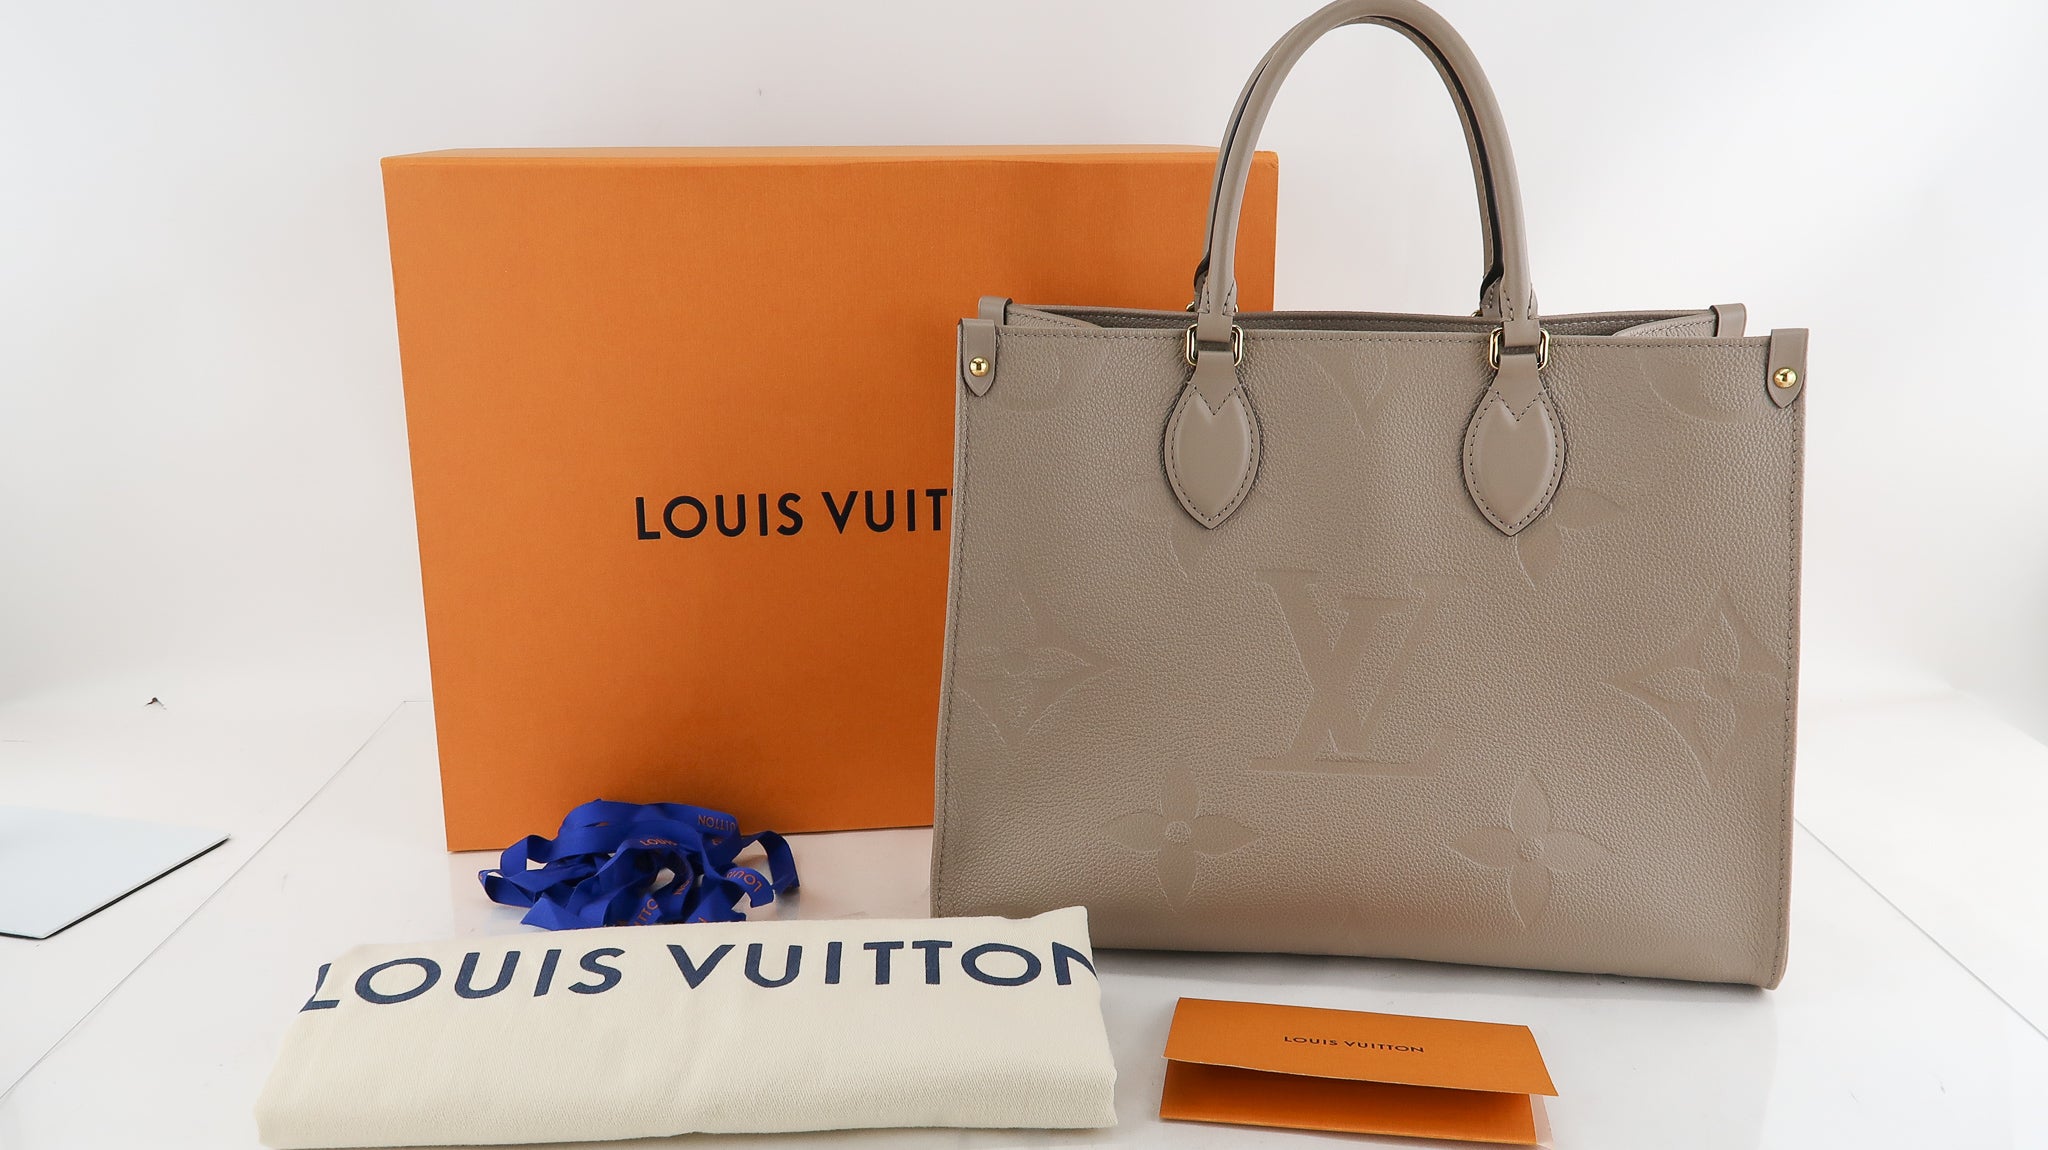 Factores de Poder - The luxurious Louis Vuitton Empreinte